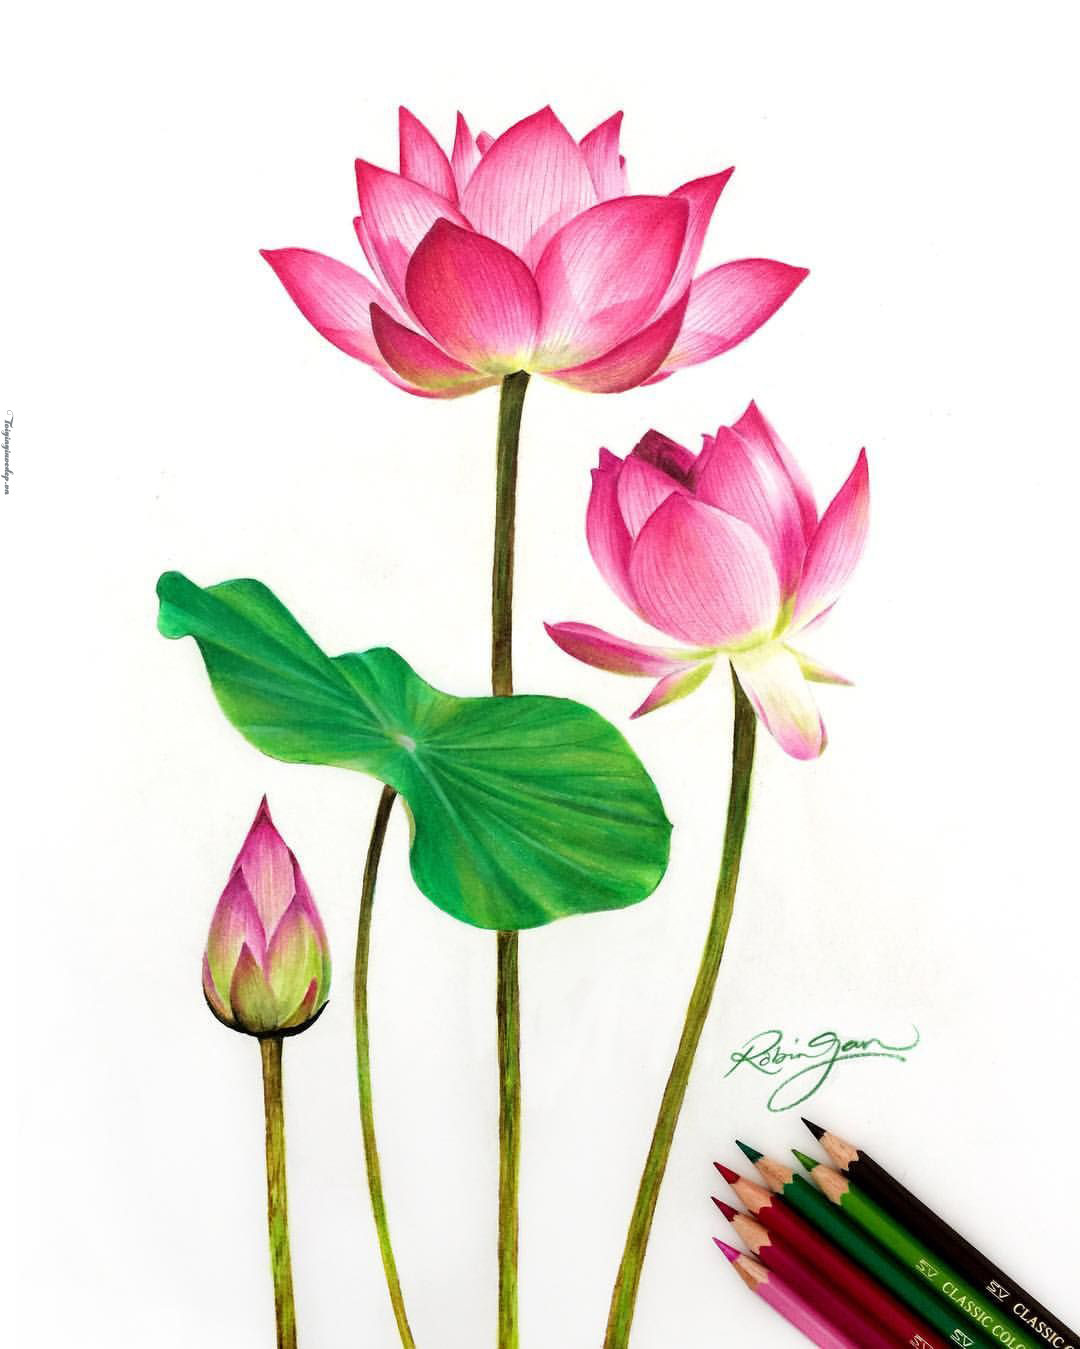 Hoa sen là một trong những loài hoa phổ biến nhất trong văn hóa và nghệ thuật Việt Nam. Bạn sẽ không thể nào bỏ qua những bức hình hoa sen đẹp tuyệt vời này.